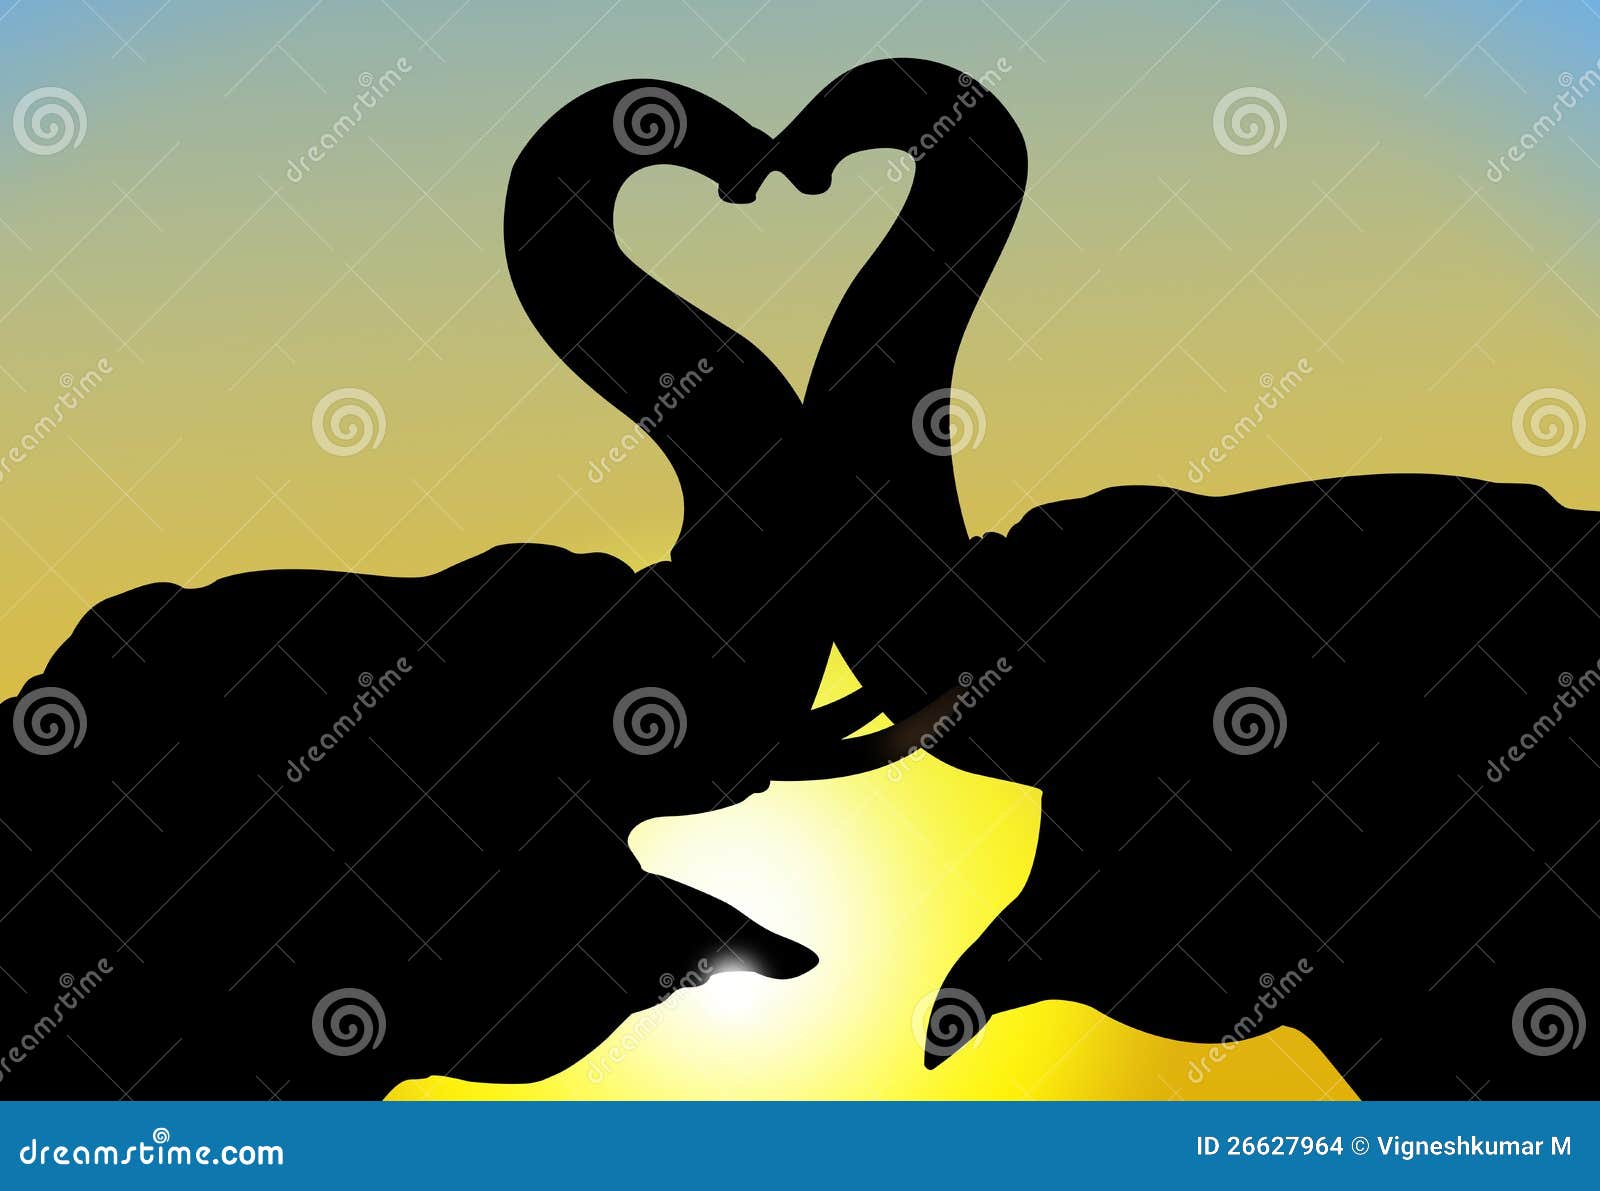 elephants in love